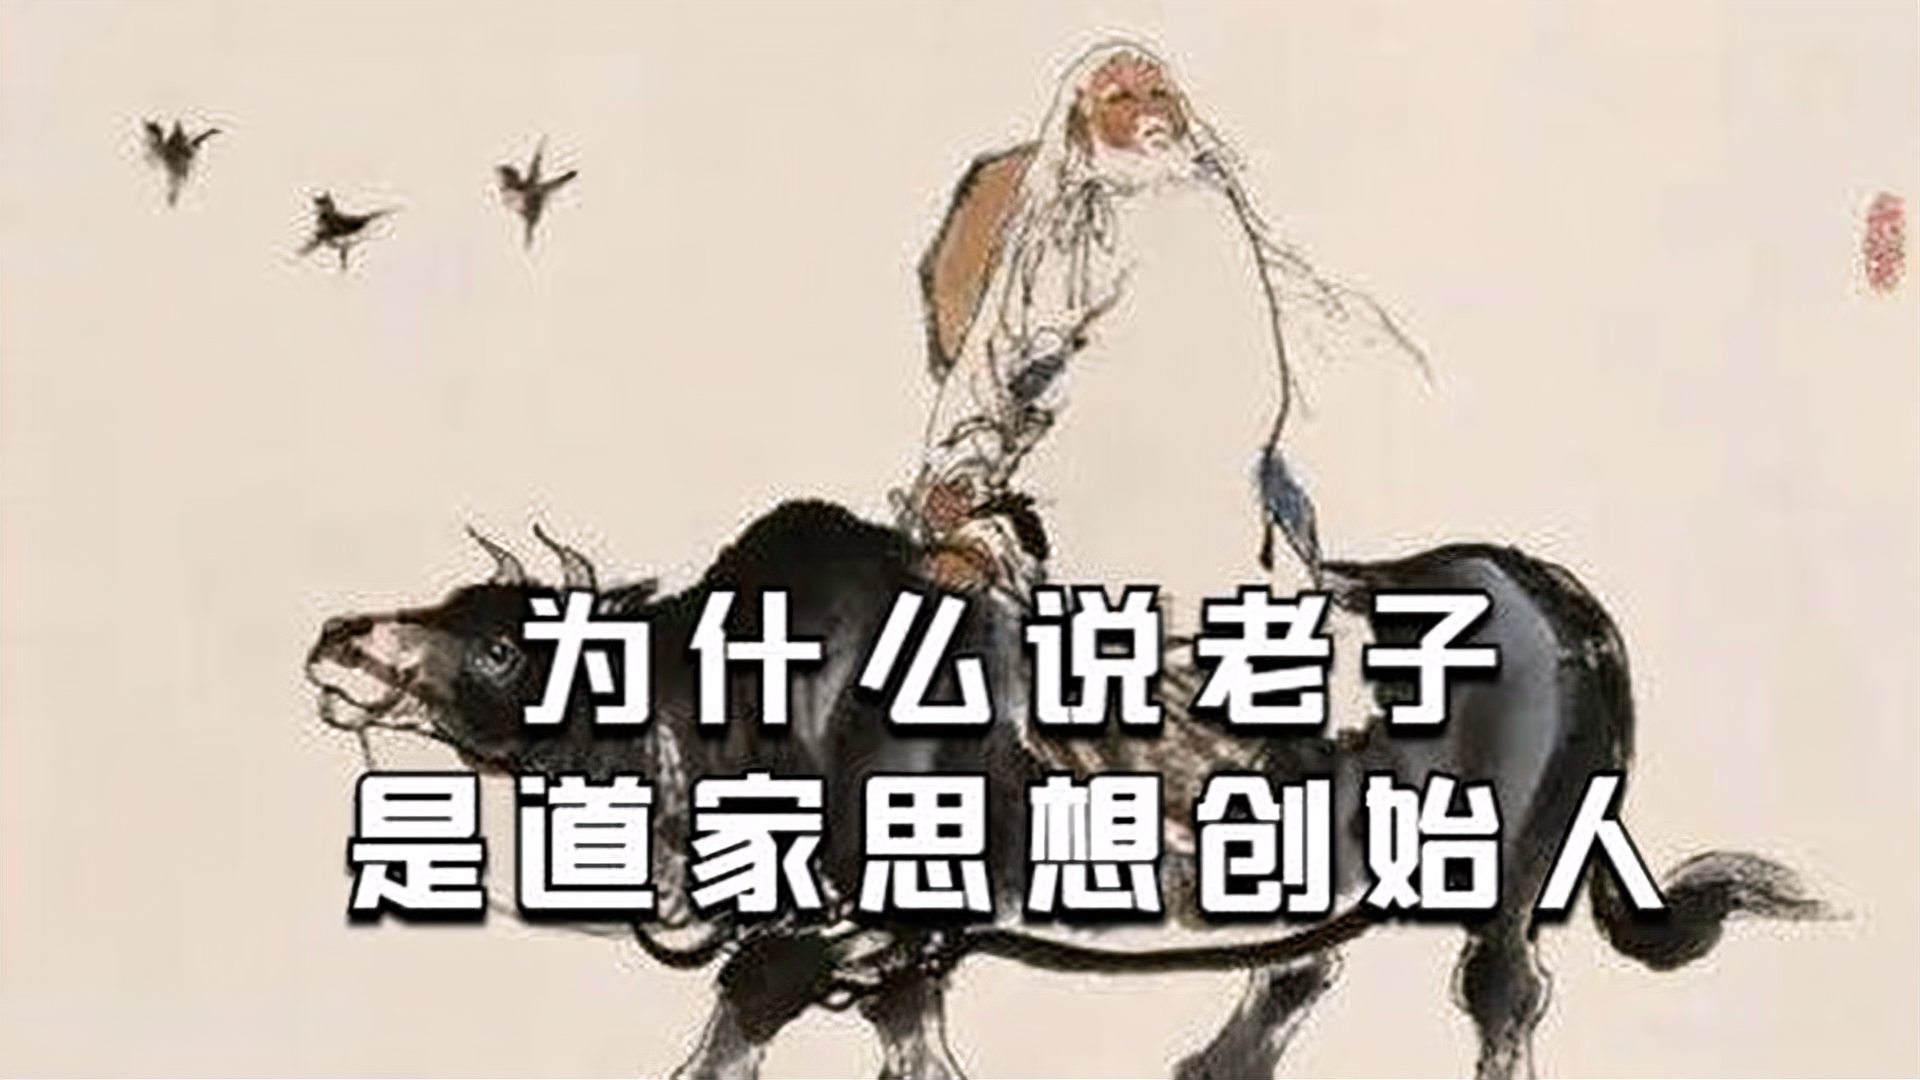 儒家思想主旨是仁义，舍生取义，以仁孝治国